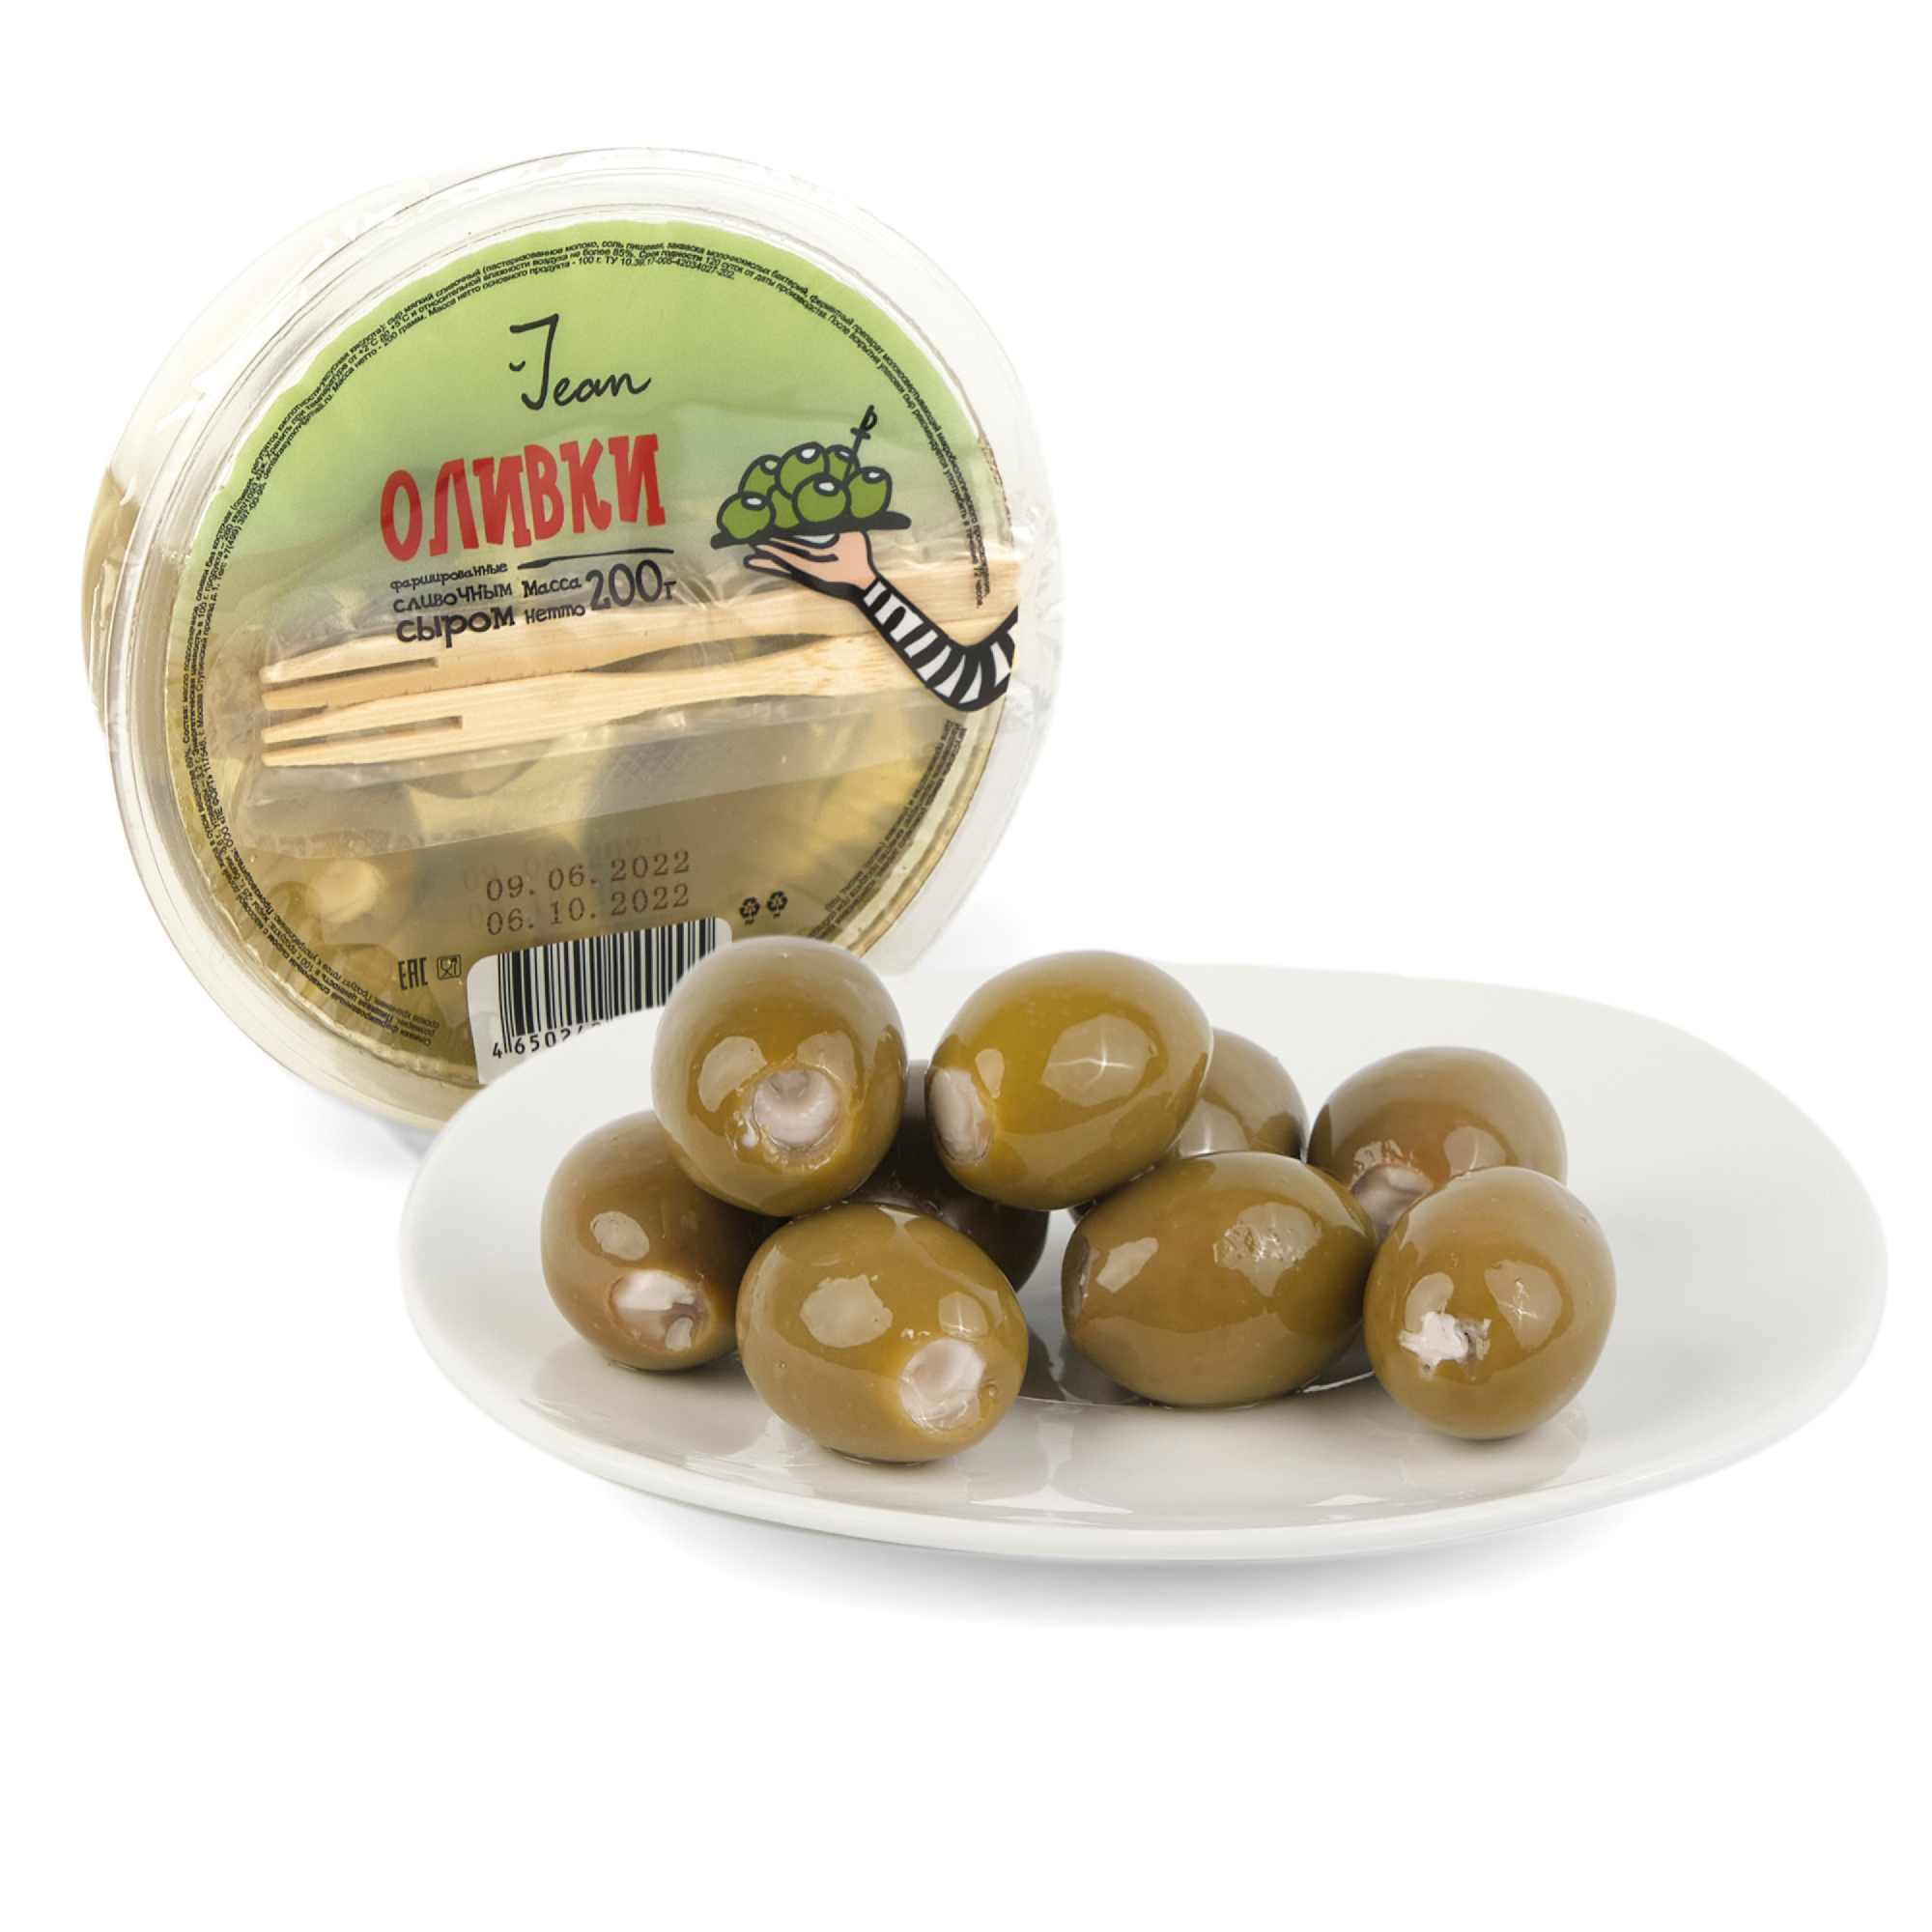 Фаршированные оливки Jean сливочным сыром, 200 г сыр hochland творожный сливочный 140 гр